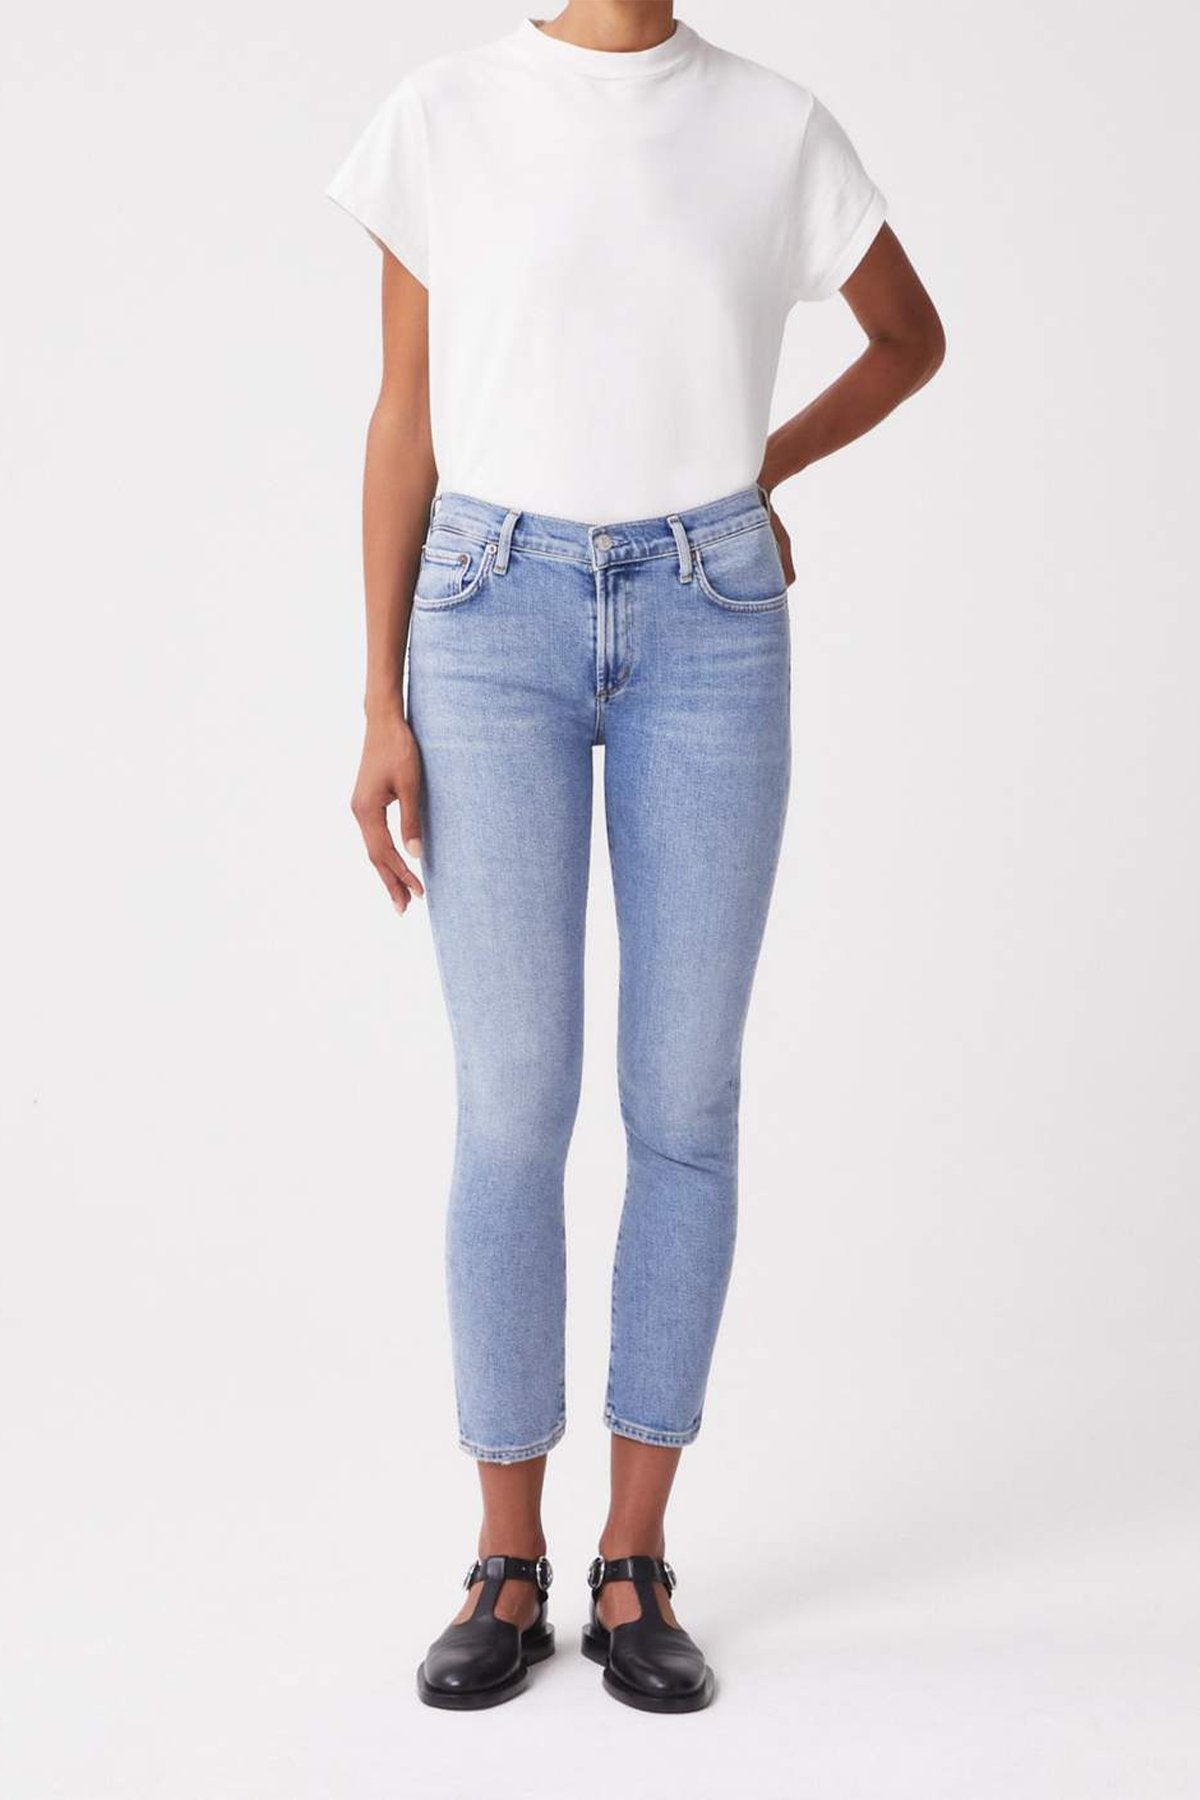 Toni Mid Rise Straight Jean in Precipice - shop-olivia.com